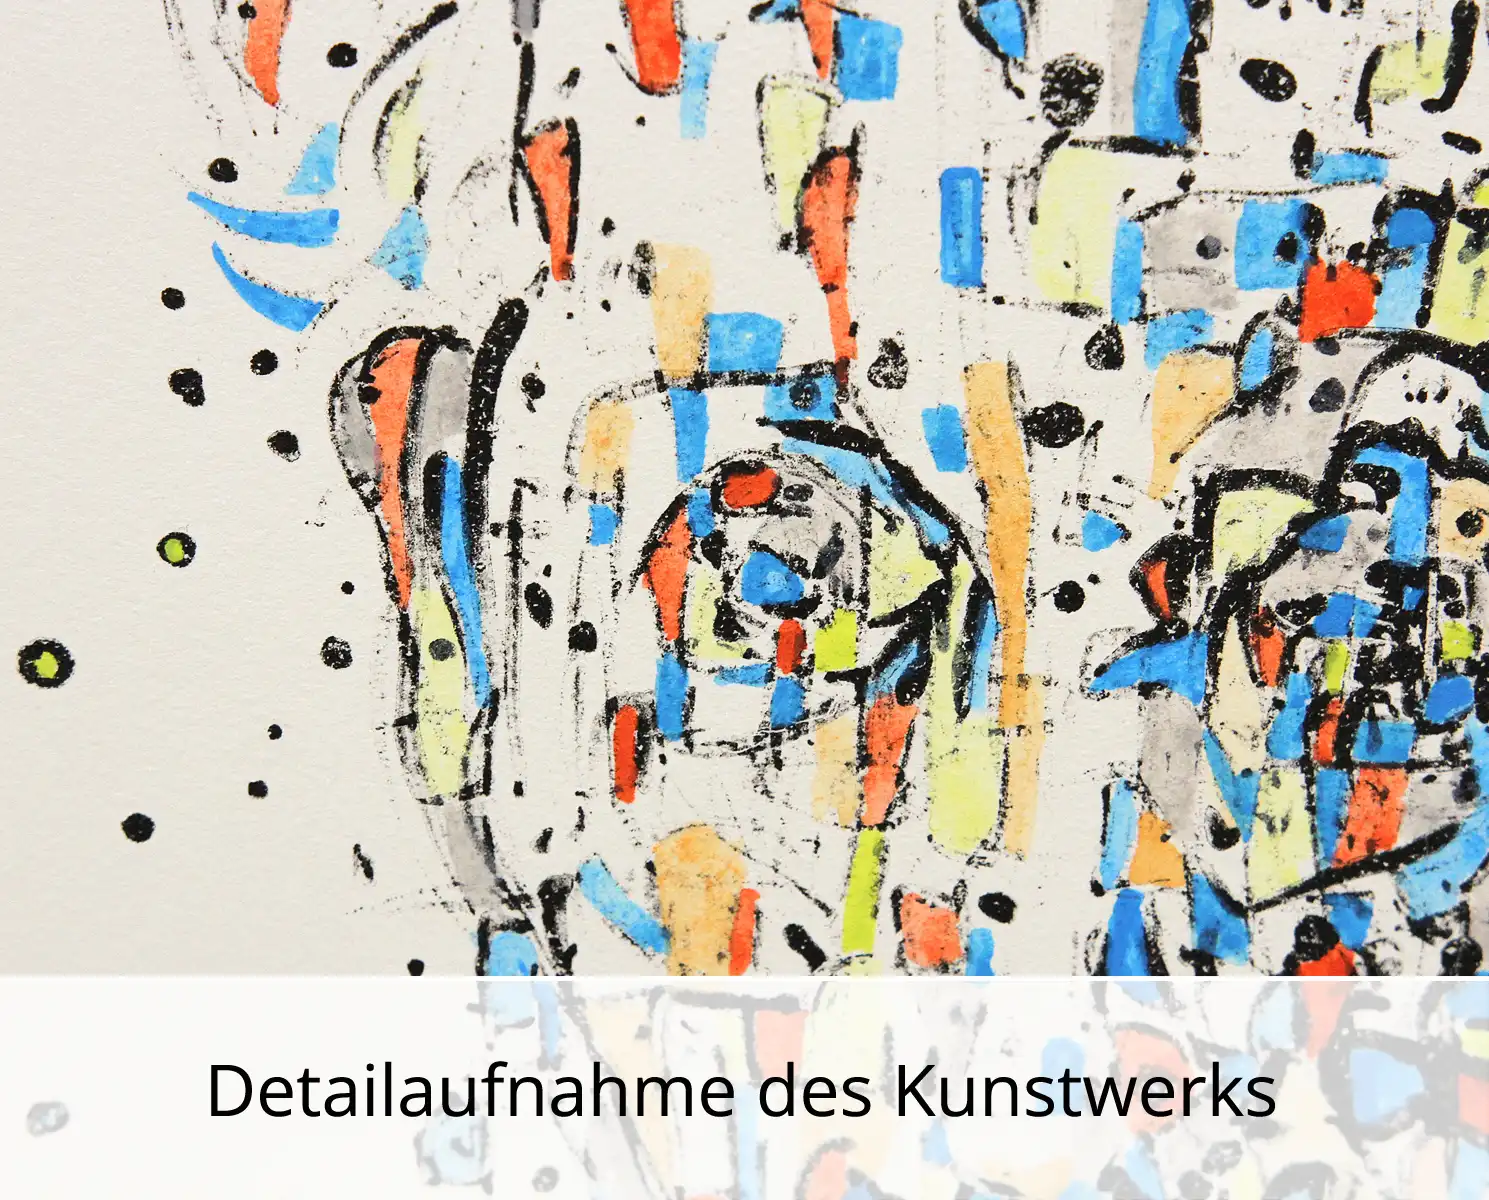 C. Blechschmidt: "Blauer Klaus", Originale Grafik/Lithographie